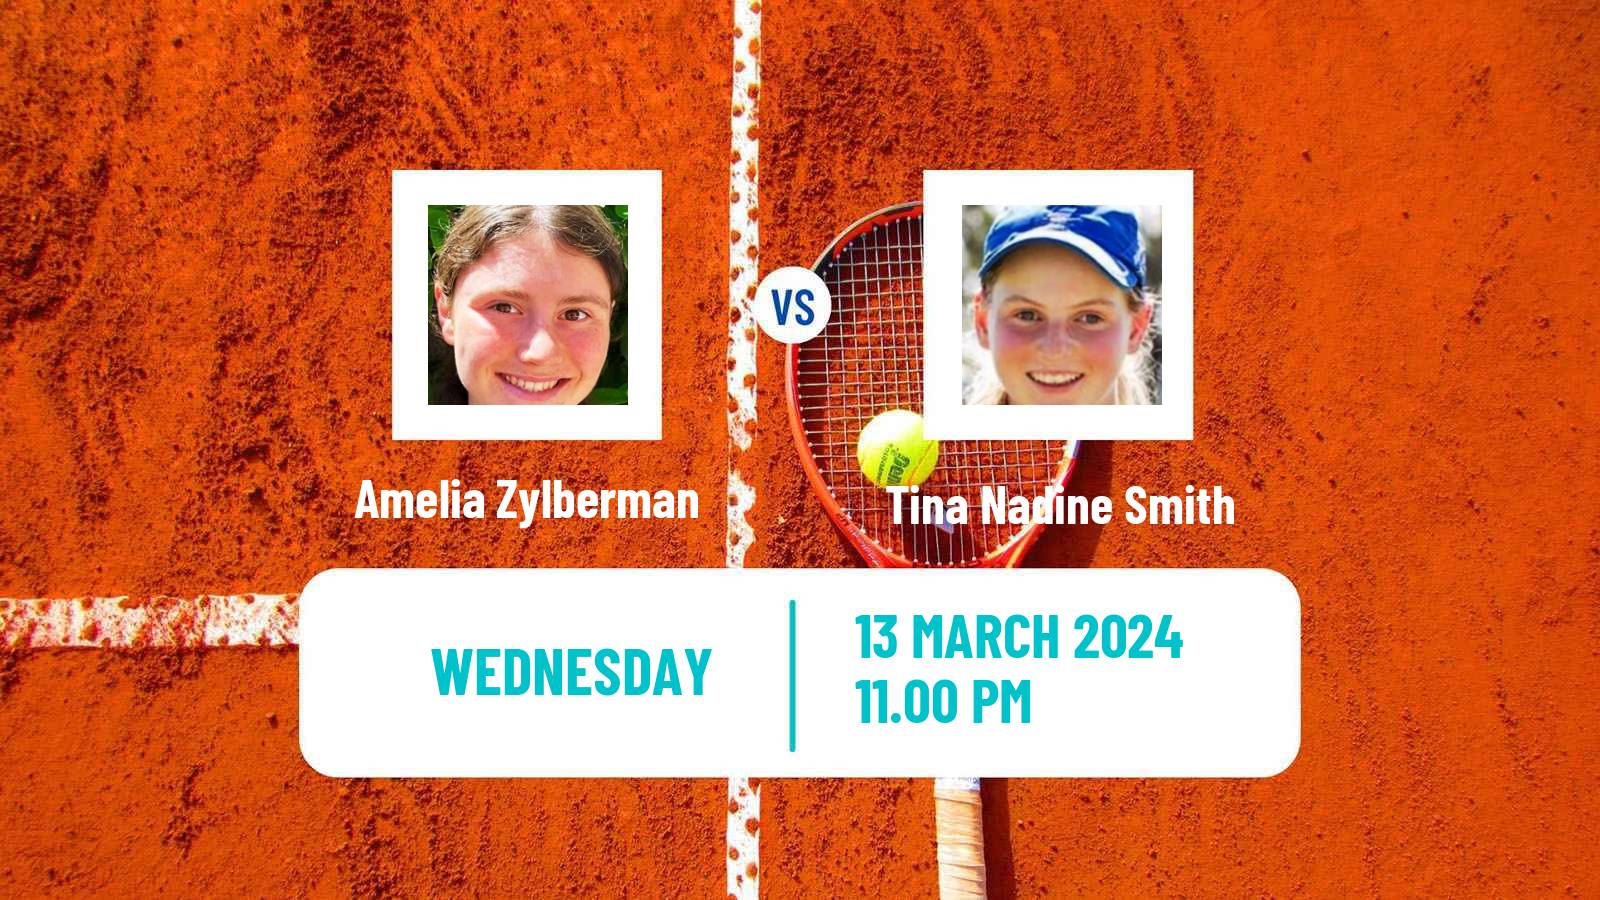 Tennis ITF W35 Mildura Women Amelia Zylberman - Tina Nadine Smith